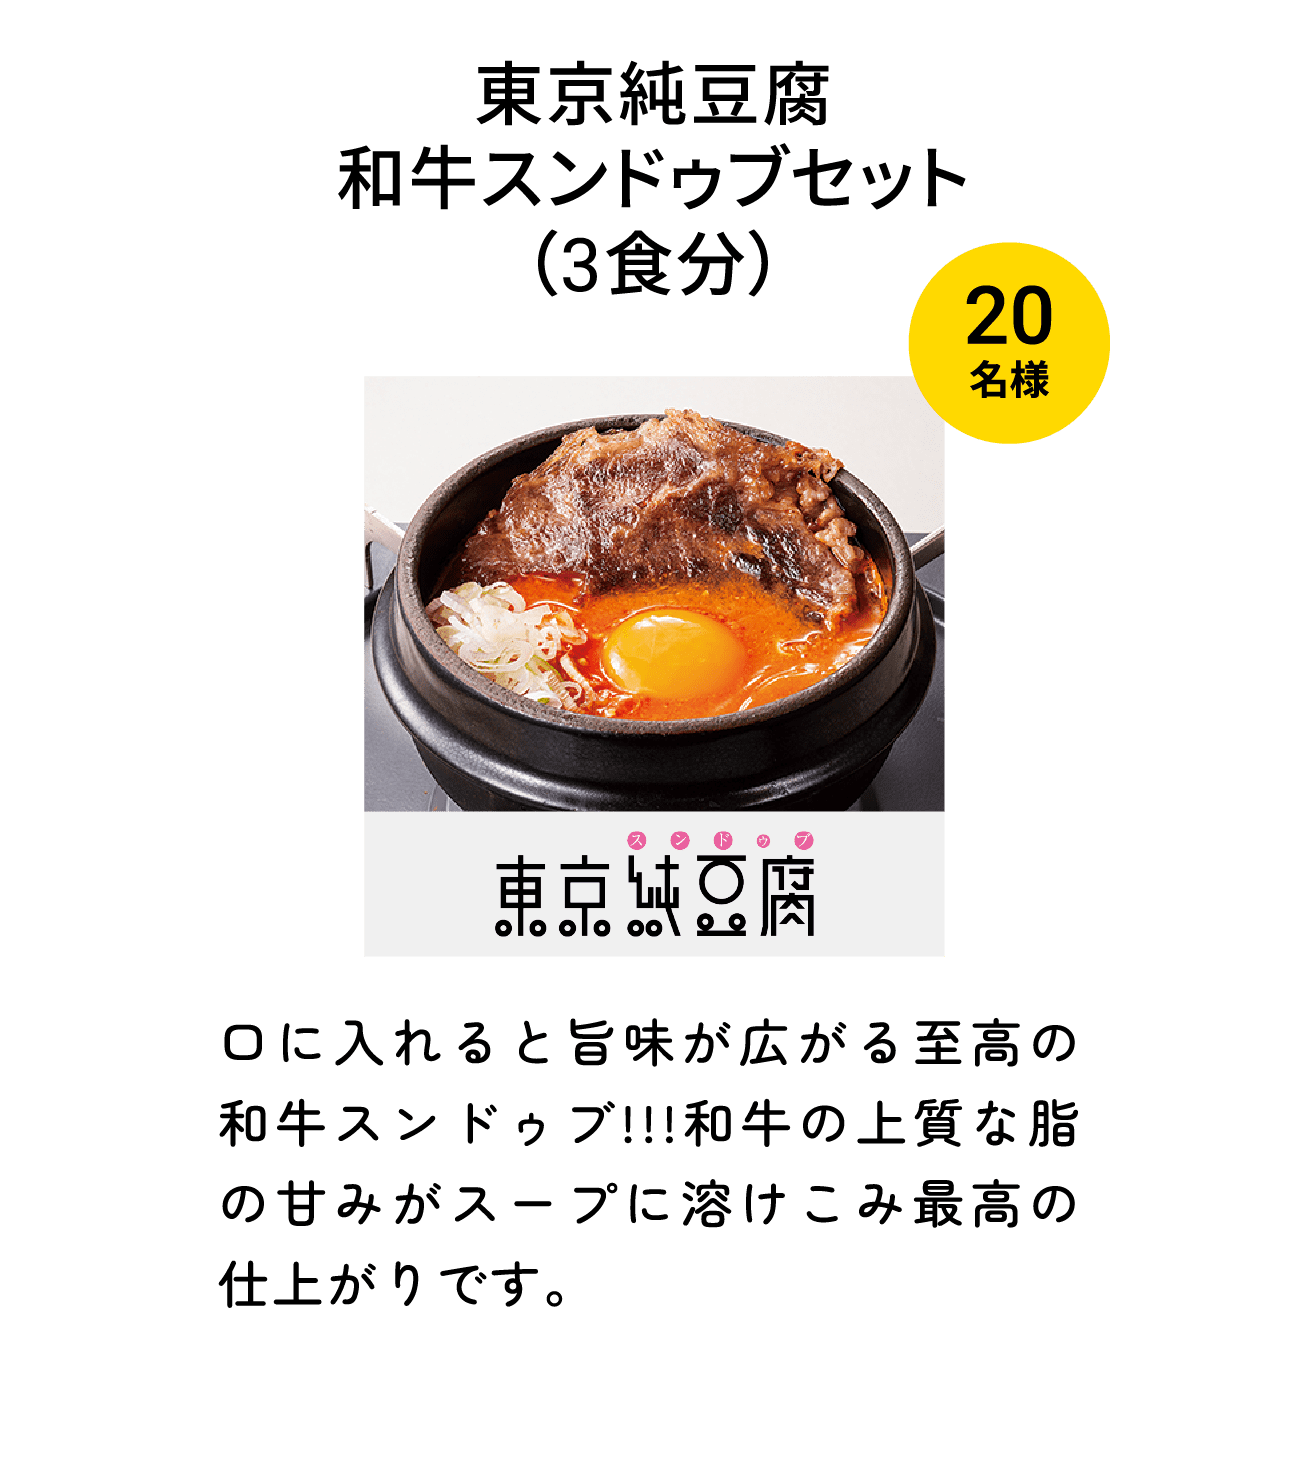 東京純豆腐 和牛スンドゥブセット（3食分）（20名様）口に入れると旨味が広がる至高の和牛スンドゥブ!!!和牛の上質な脂の甘みがスープに溶けこみ最高の仕上がりです。